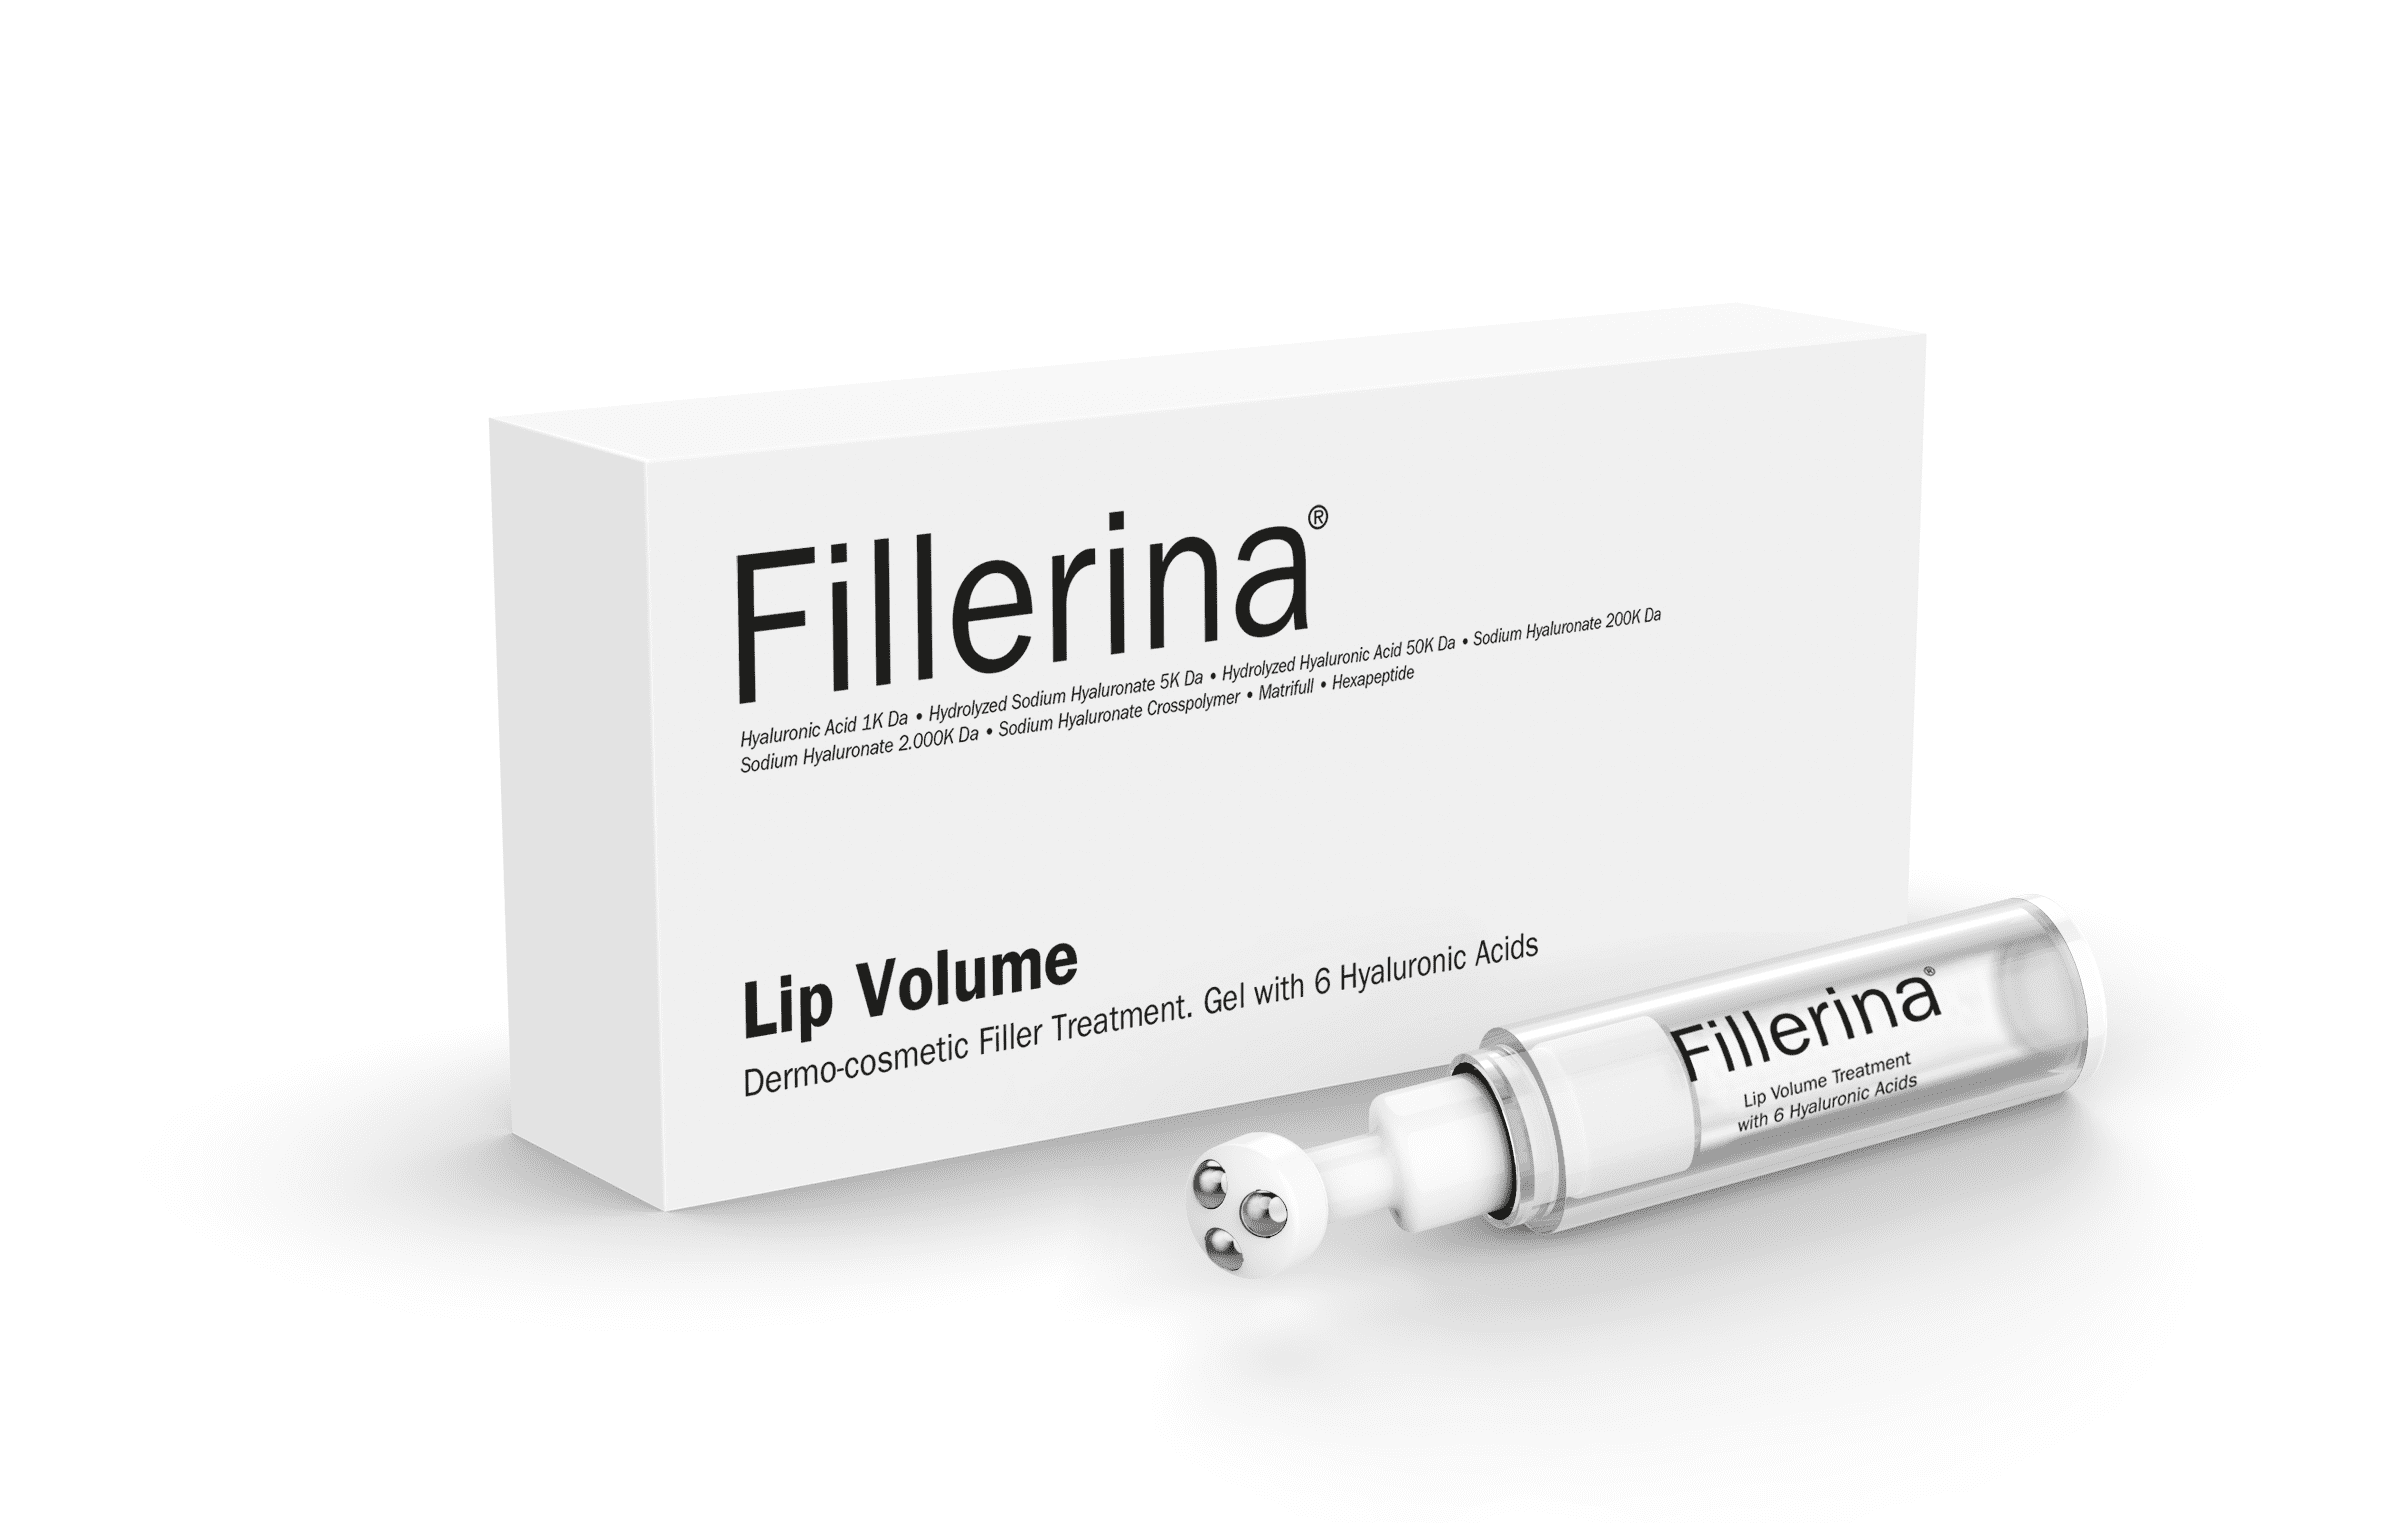 FILLERINA gels lūpu apjoma palielināšanai 7 ml, Intensitāte 2-8051417235860